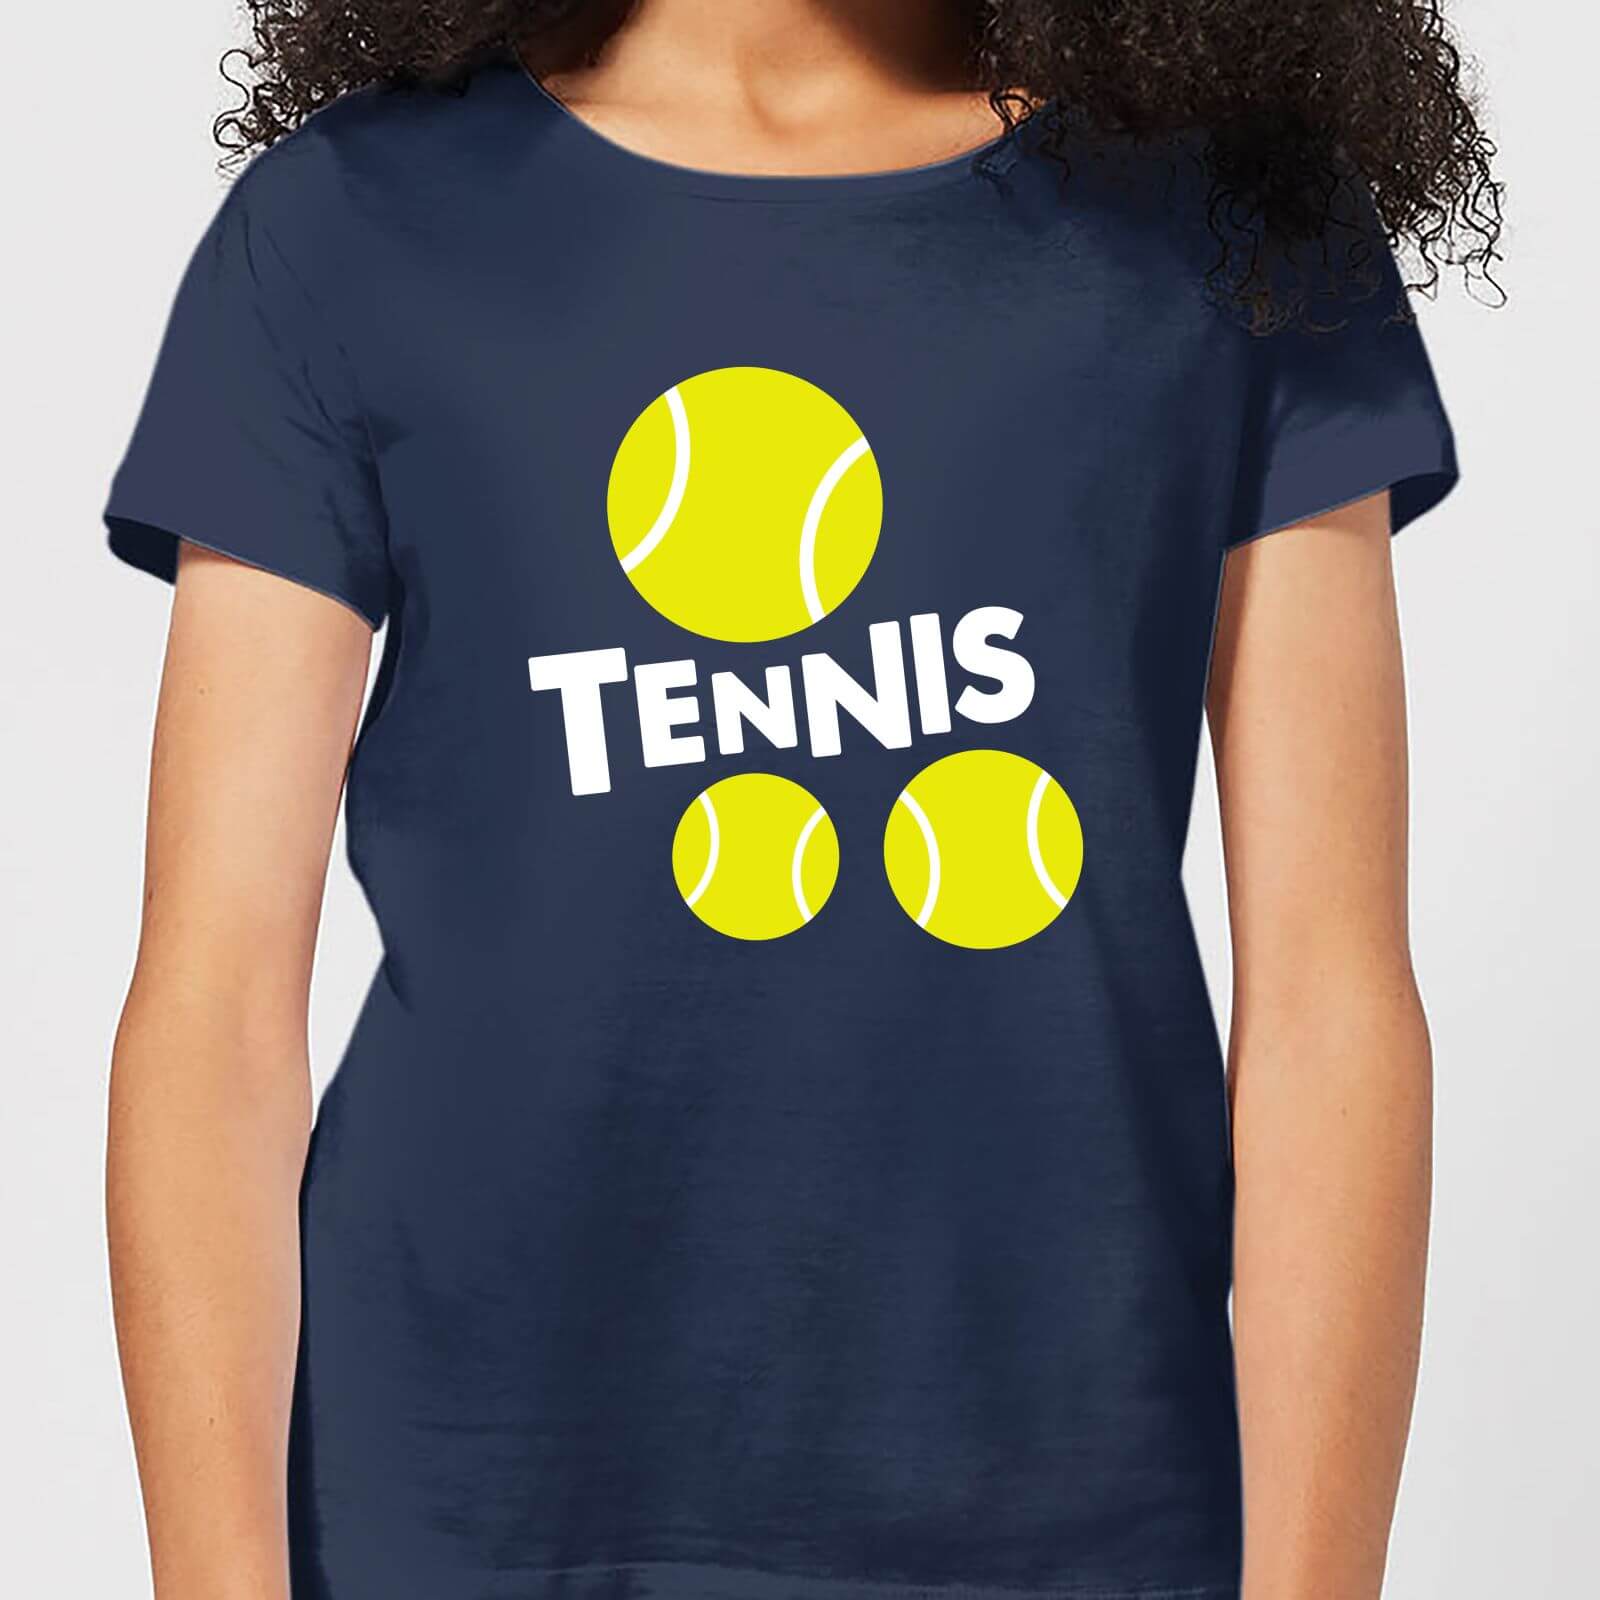 Tennis Balls Womens T-Shirt - Navy - XL - Navy